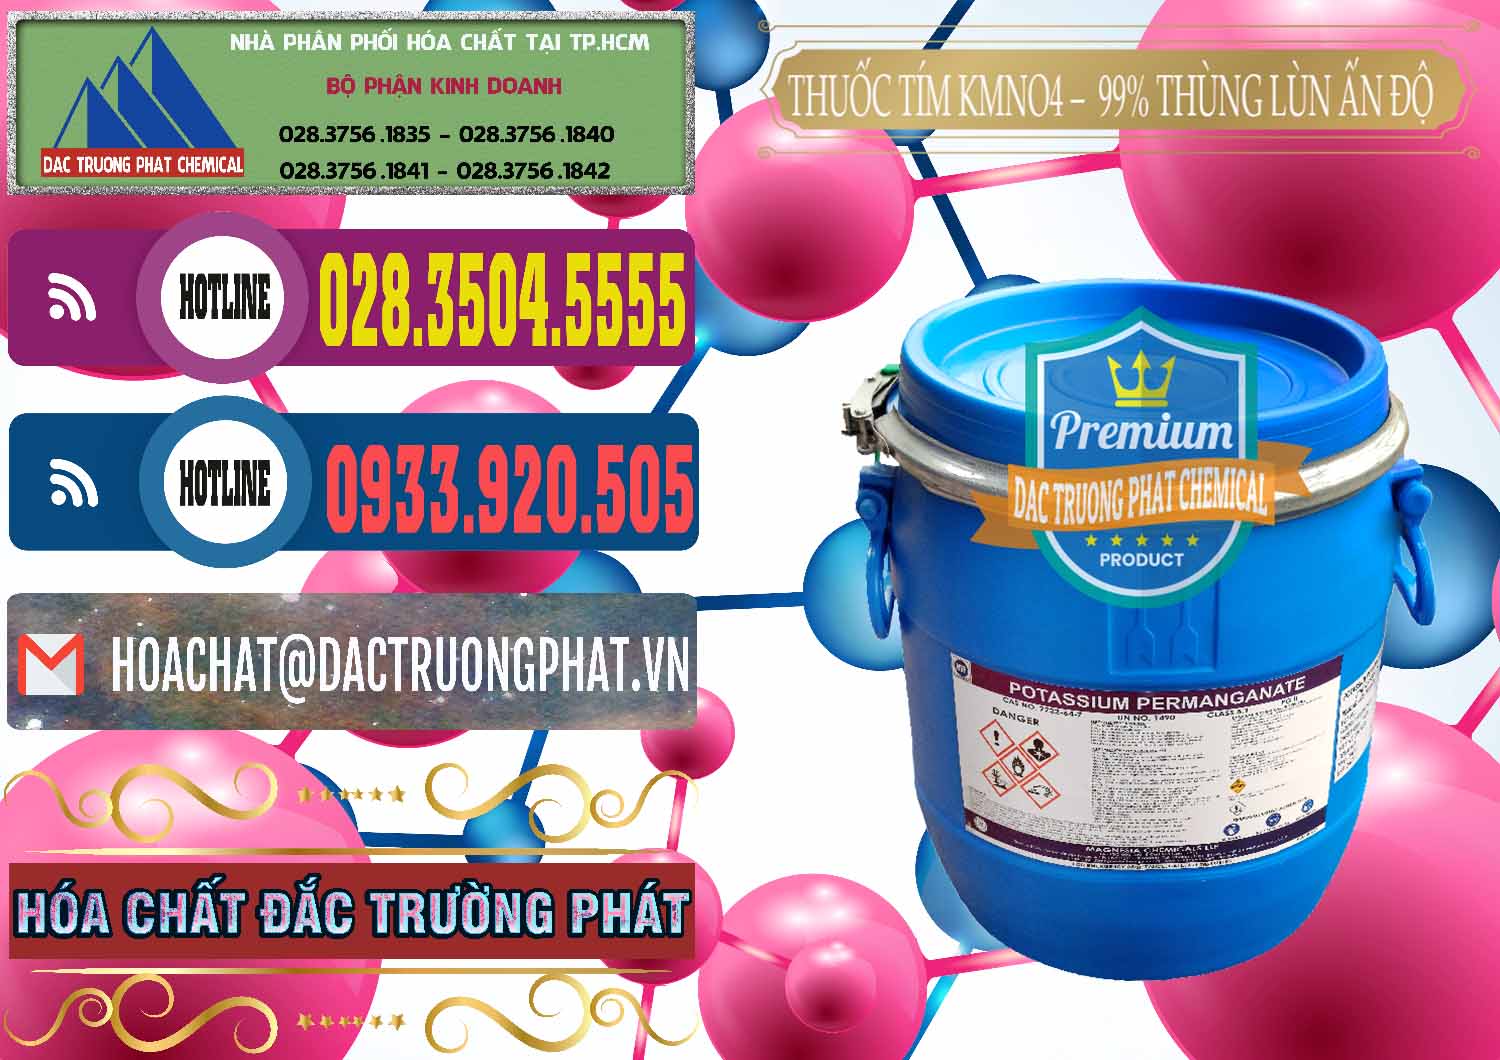 Chuyên cung cấp và bán Thuốc Tím - KMNO4 Thùng Lùn 99% Magnesia Chemicals Ấn Độ India - 0165 - Nhà phân phối ( kinh doanh ) hóa chất tại TP.HCM - muabanhoachat.com.vn